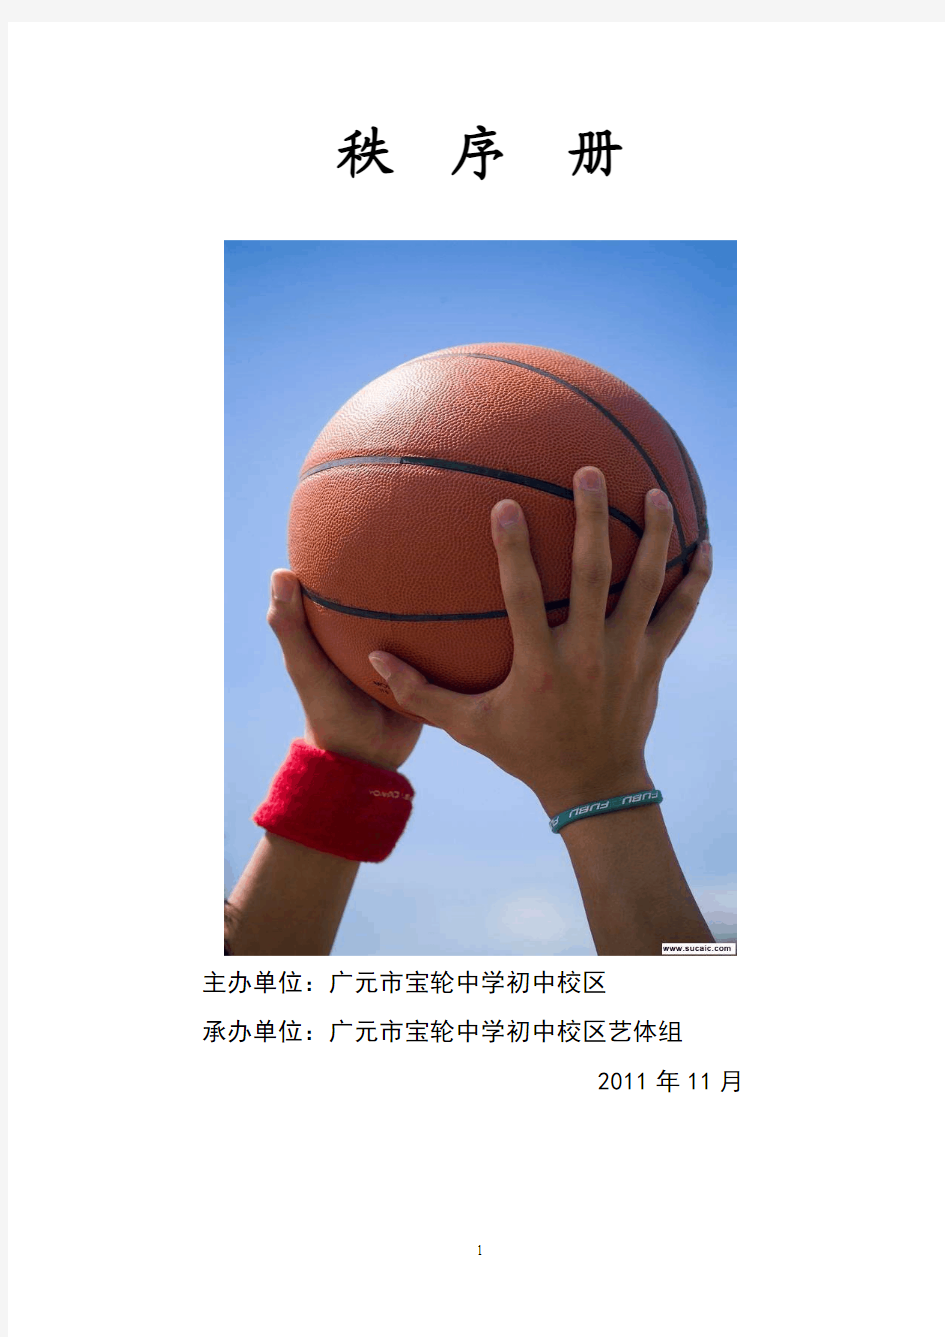 广元市宝轮中学初中校区学生篮球比赛